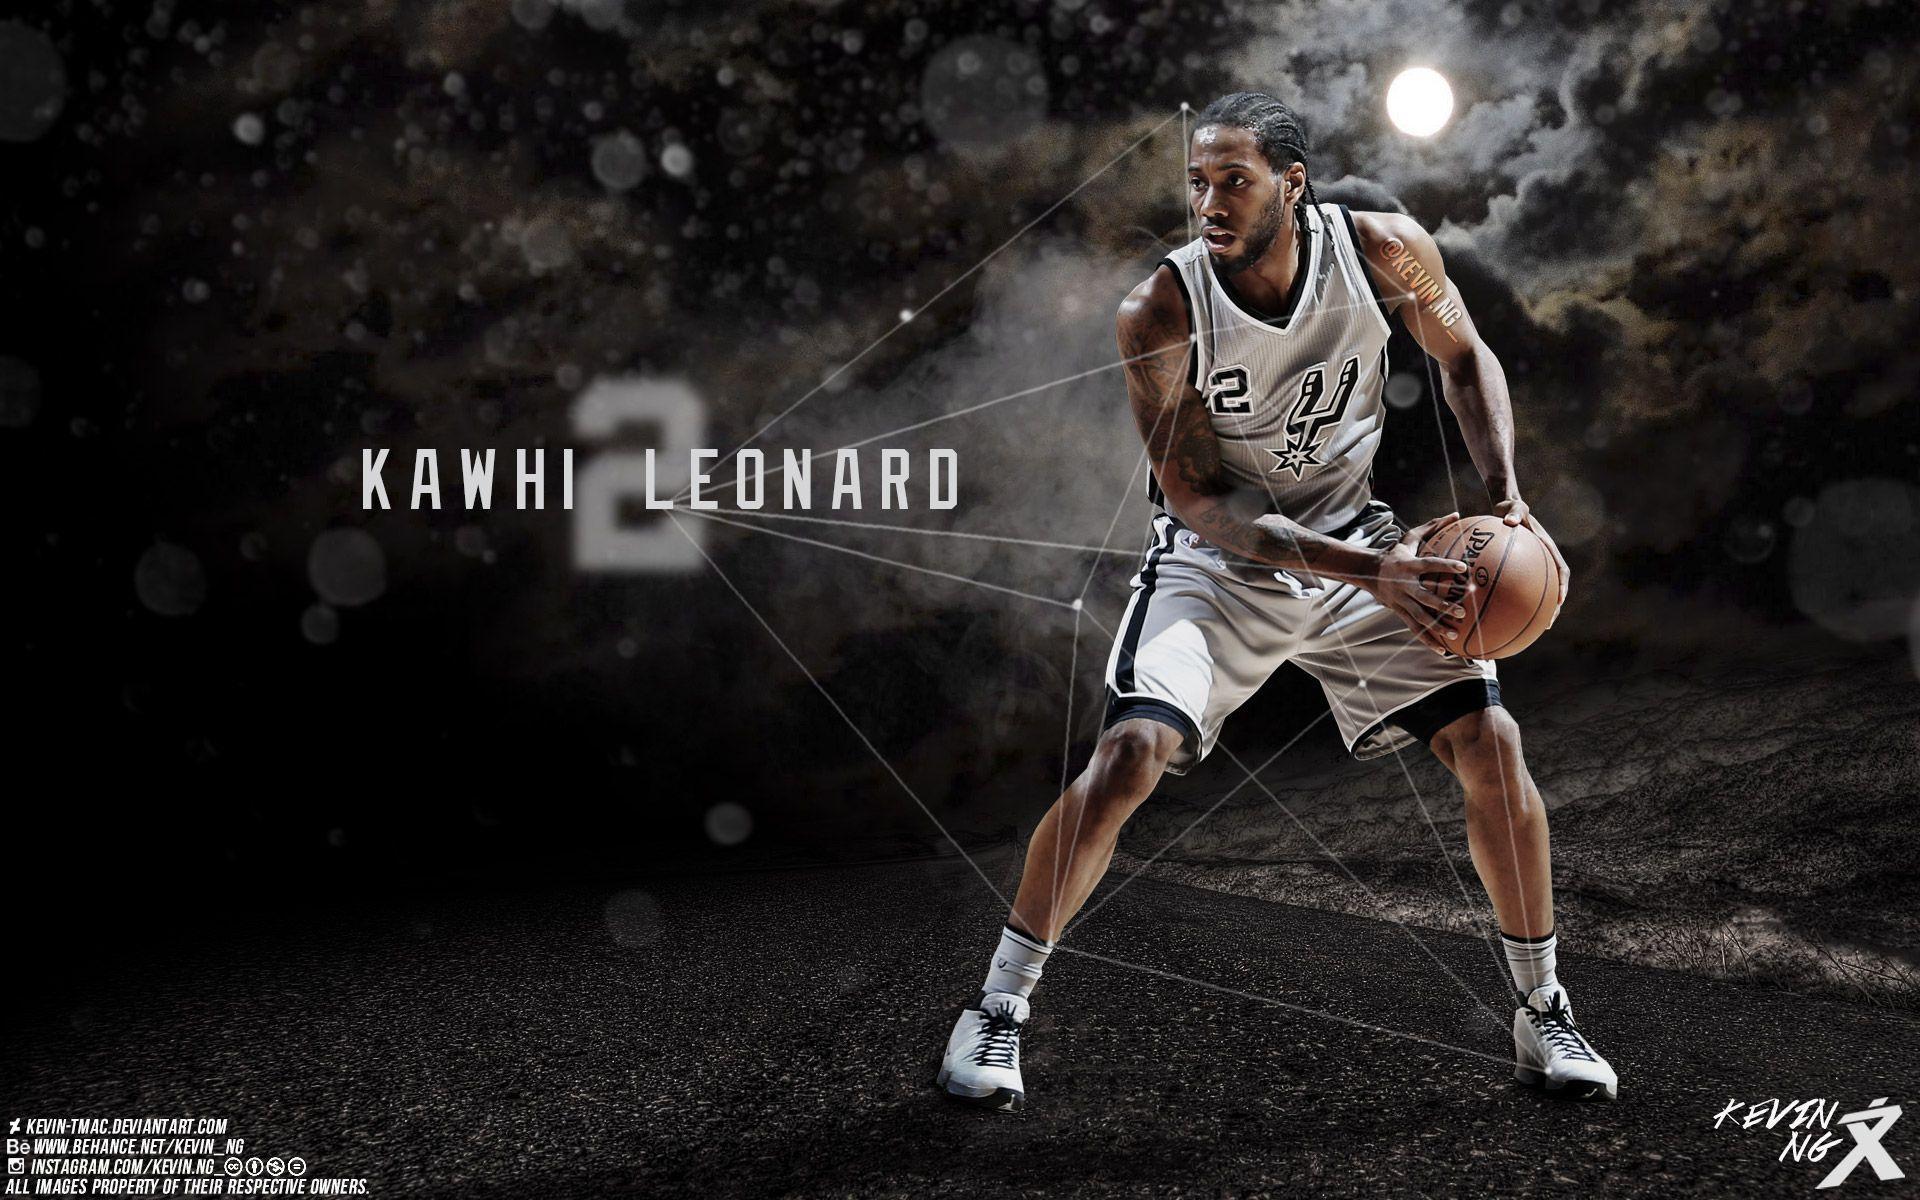 Kawhi Leonard Wallpaper. Basketball Wallpaper at